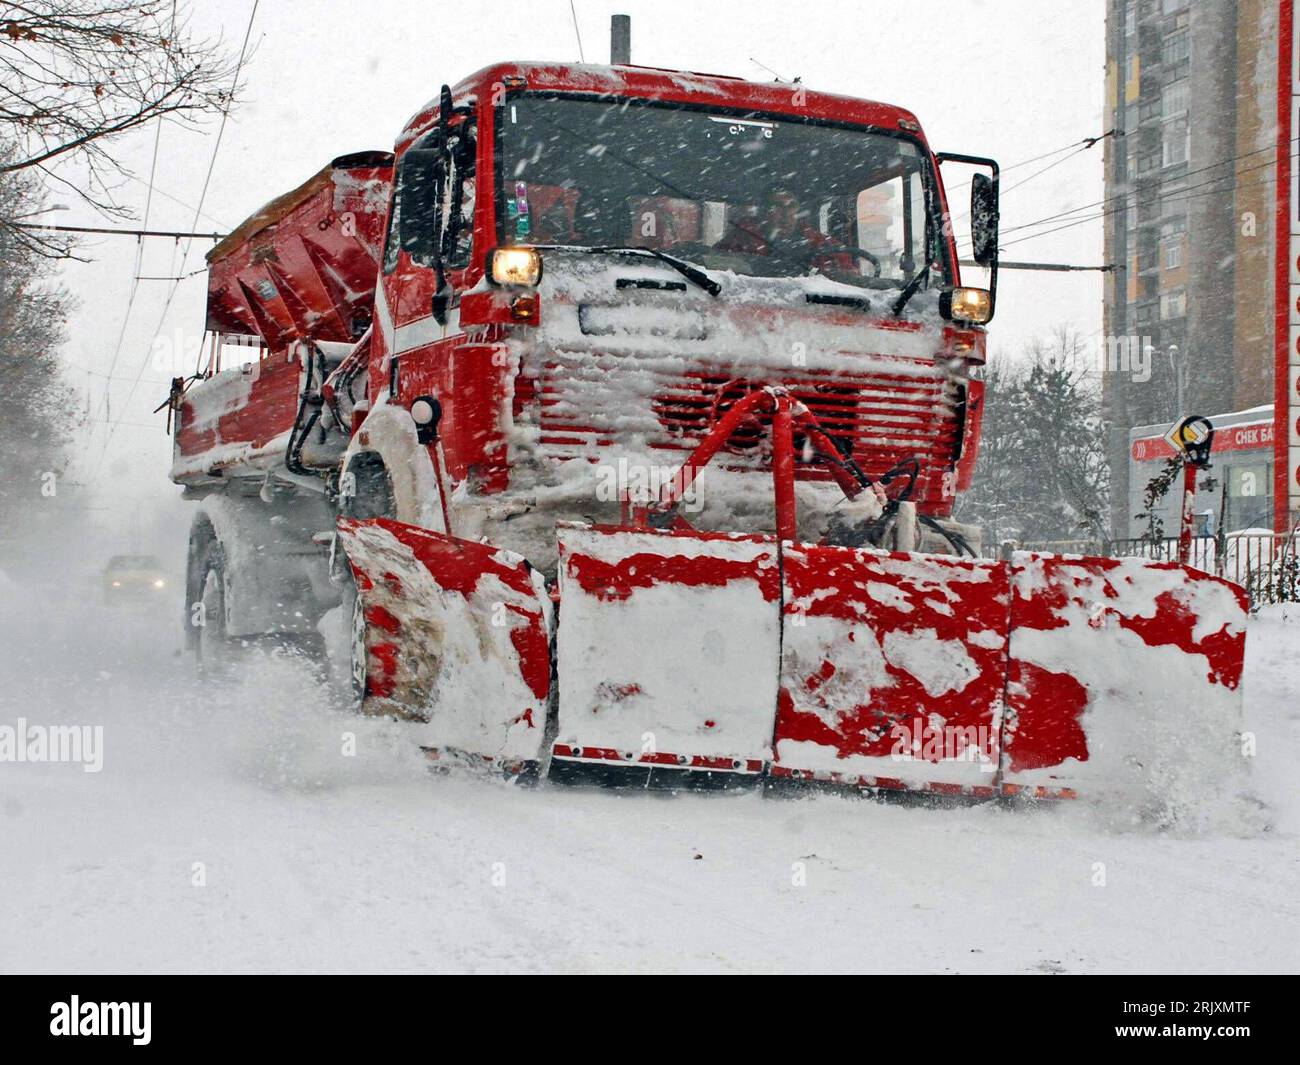 Schneeräumung von Schnee bedeckte Auffahrt und Auto Stockfotografie - Alamy